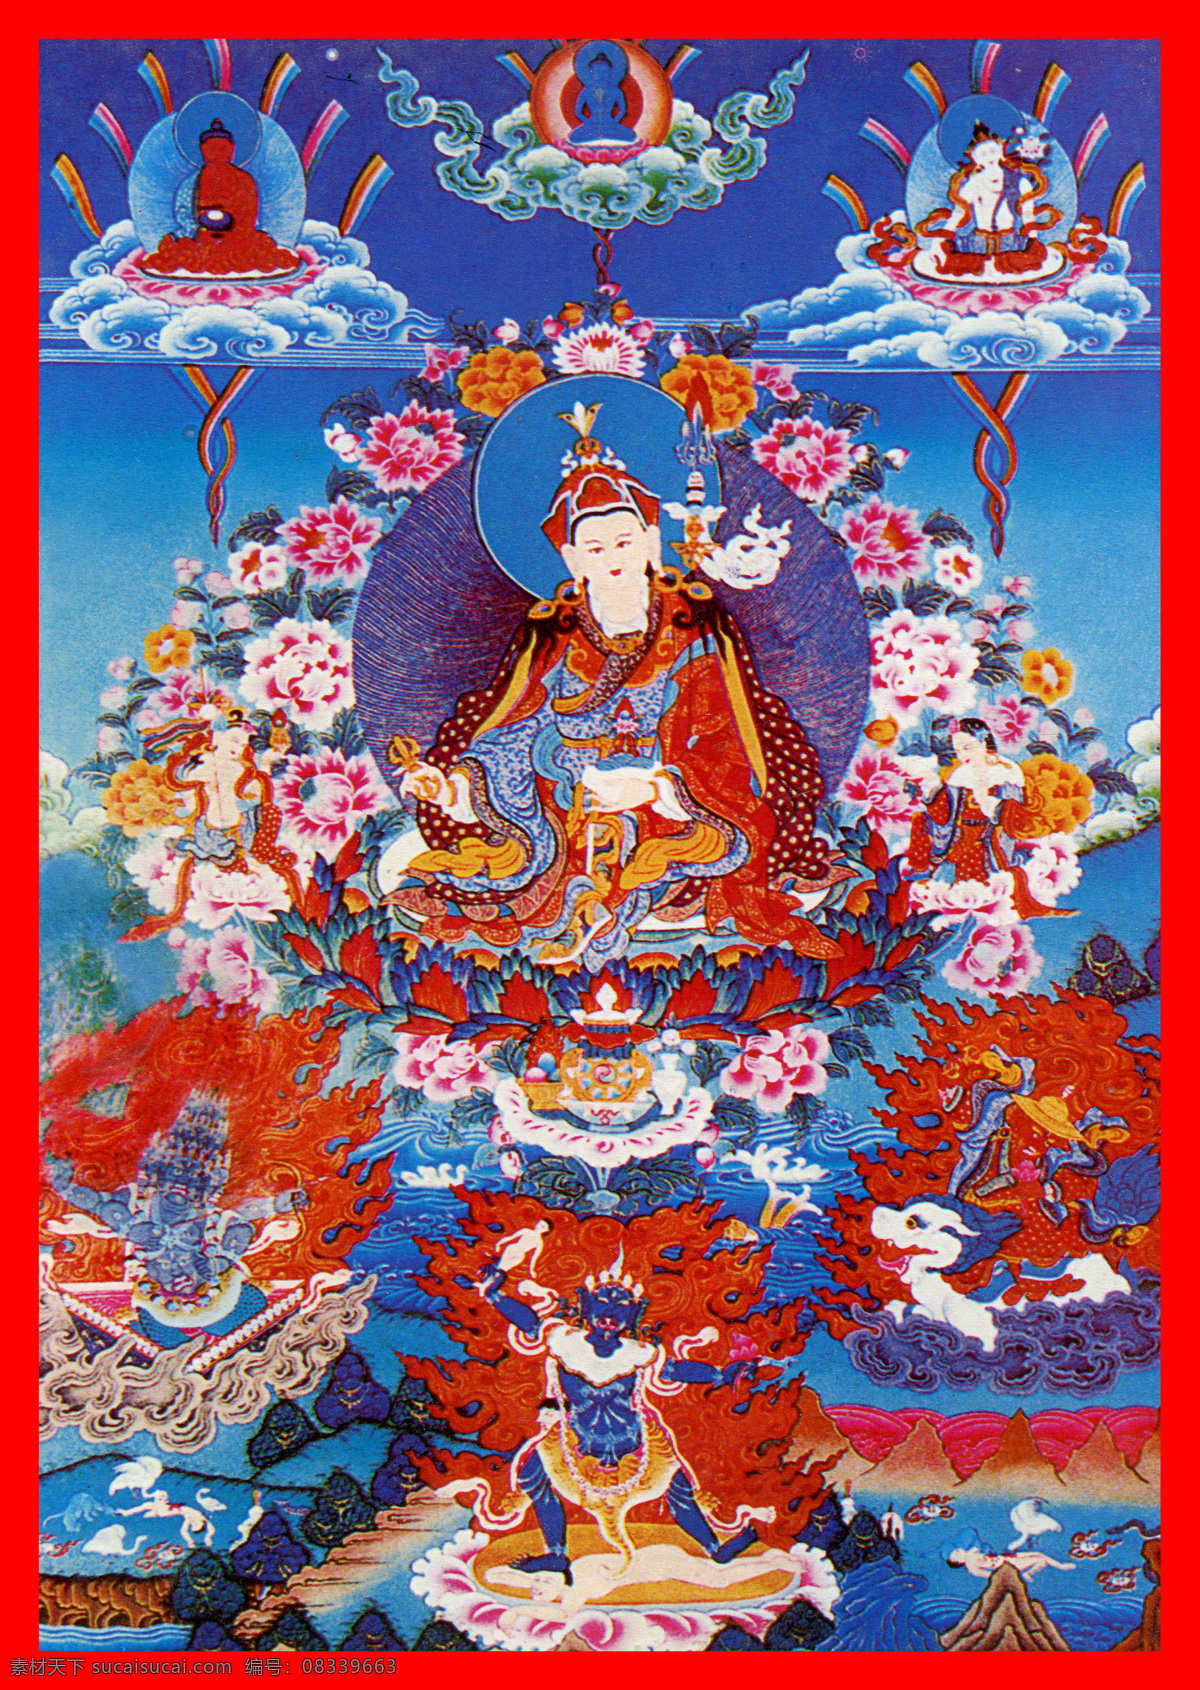 西藏 日喀则 唐卡 佛教 佛法 佛经 佛龛 唐卡全大 藏族文化13 藏族文化 宗教信仰 文化艺术